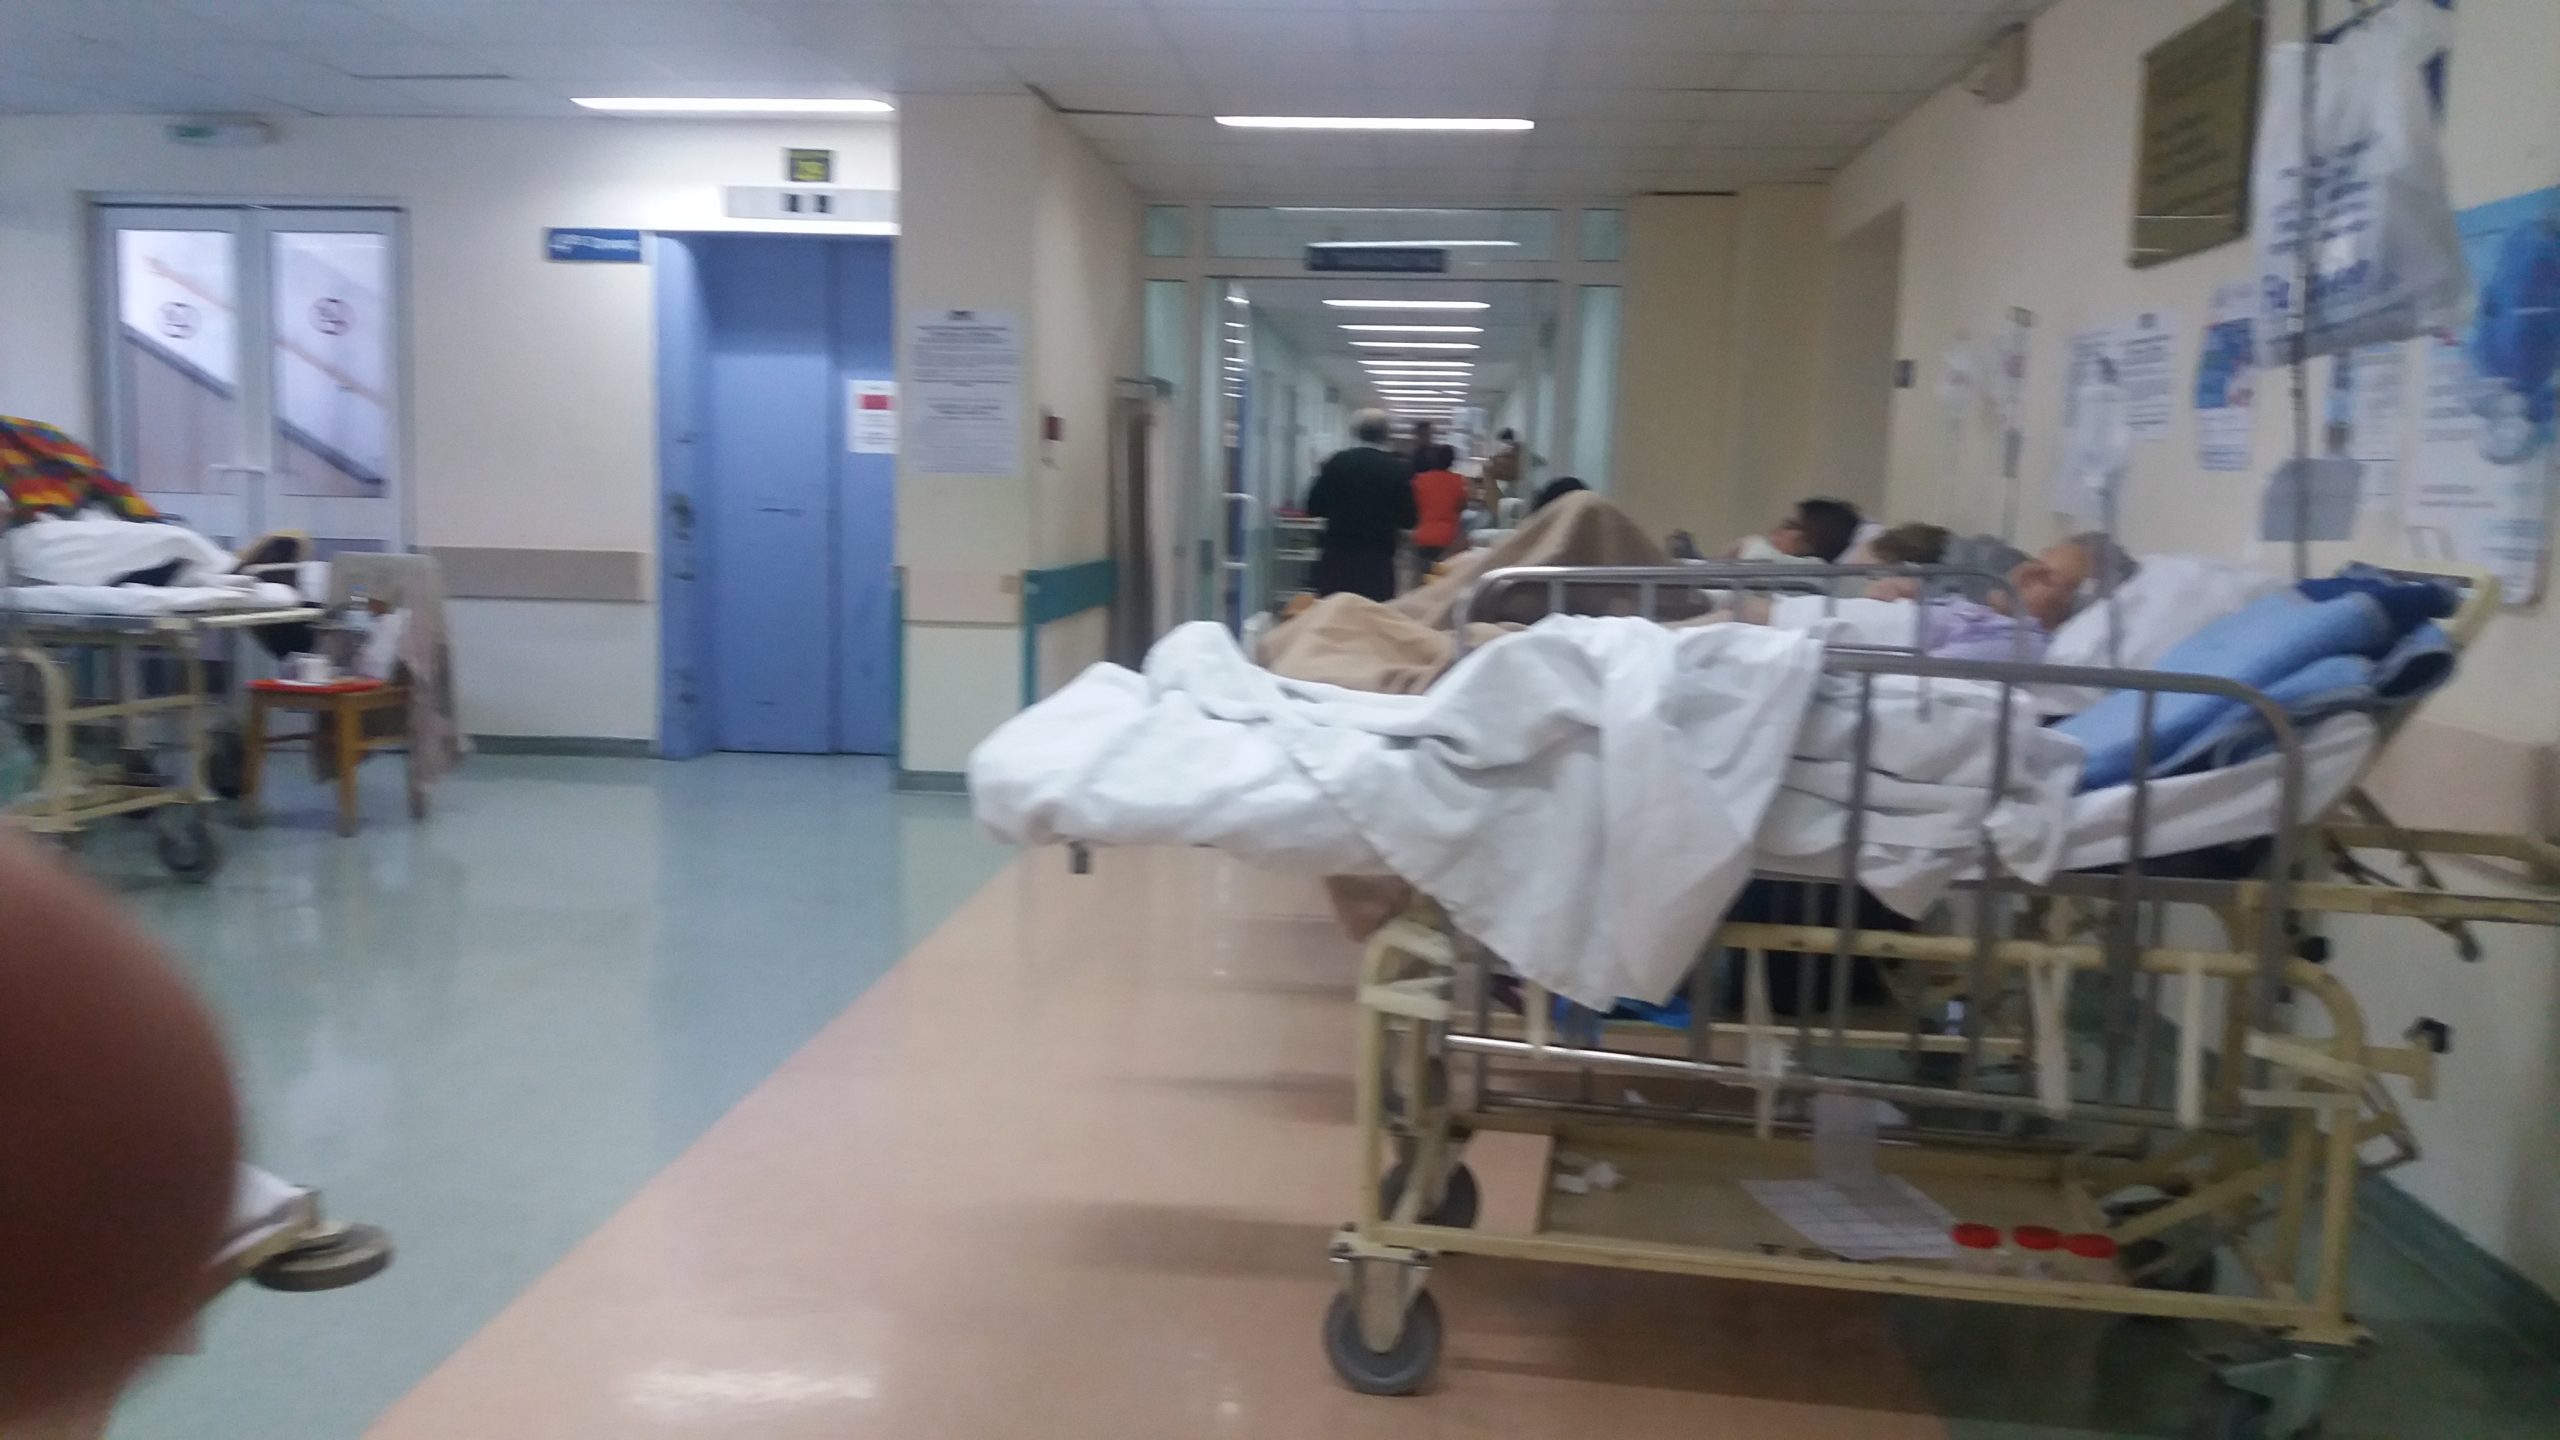 Νοσοκομείο «Αττικόν»: Ζοφερή κατάσταση με ράντζα στους διαδρόμους – Σε απόγνωση εργαζόμενοι και ασθενείς